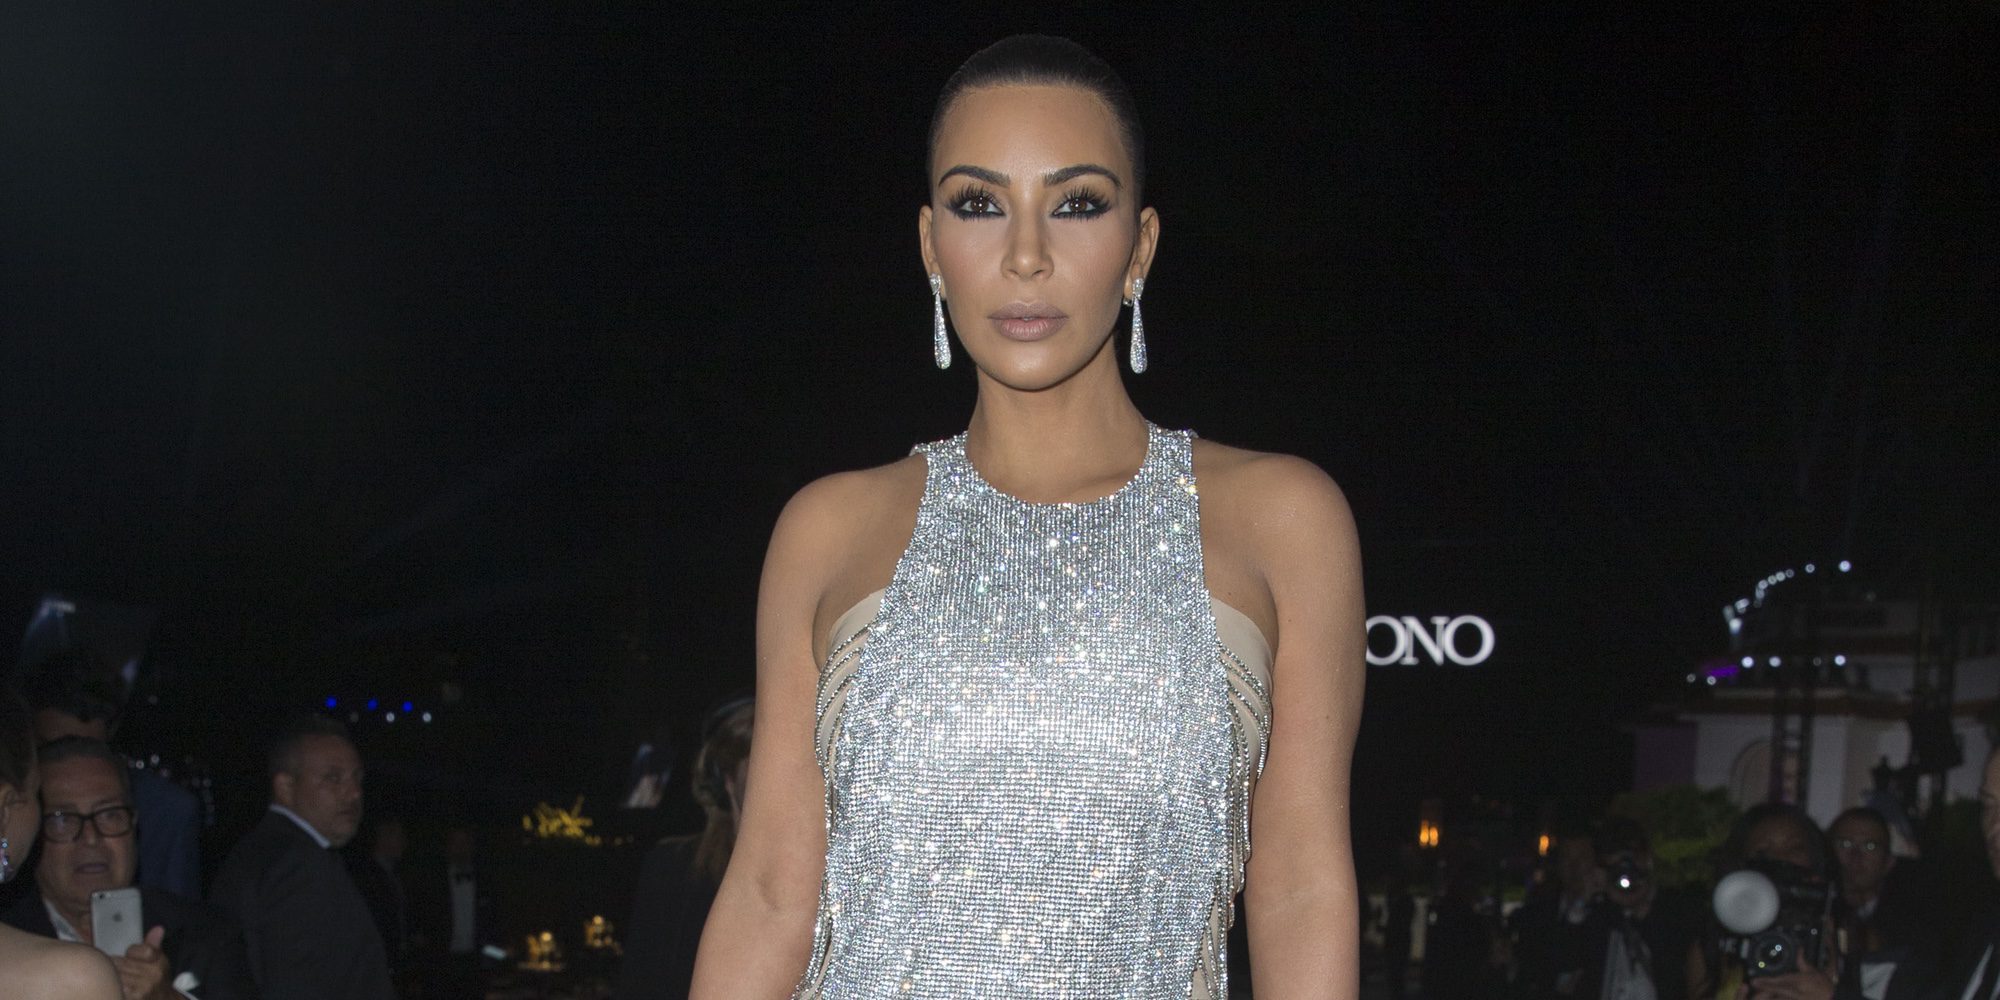 El polémico y desafortunado tributo de Kim Kardashian a las víctimas del atentado de Manchester